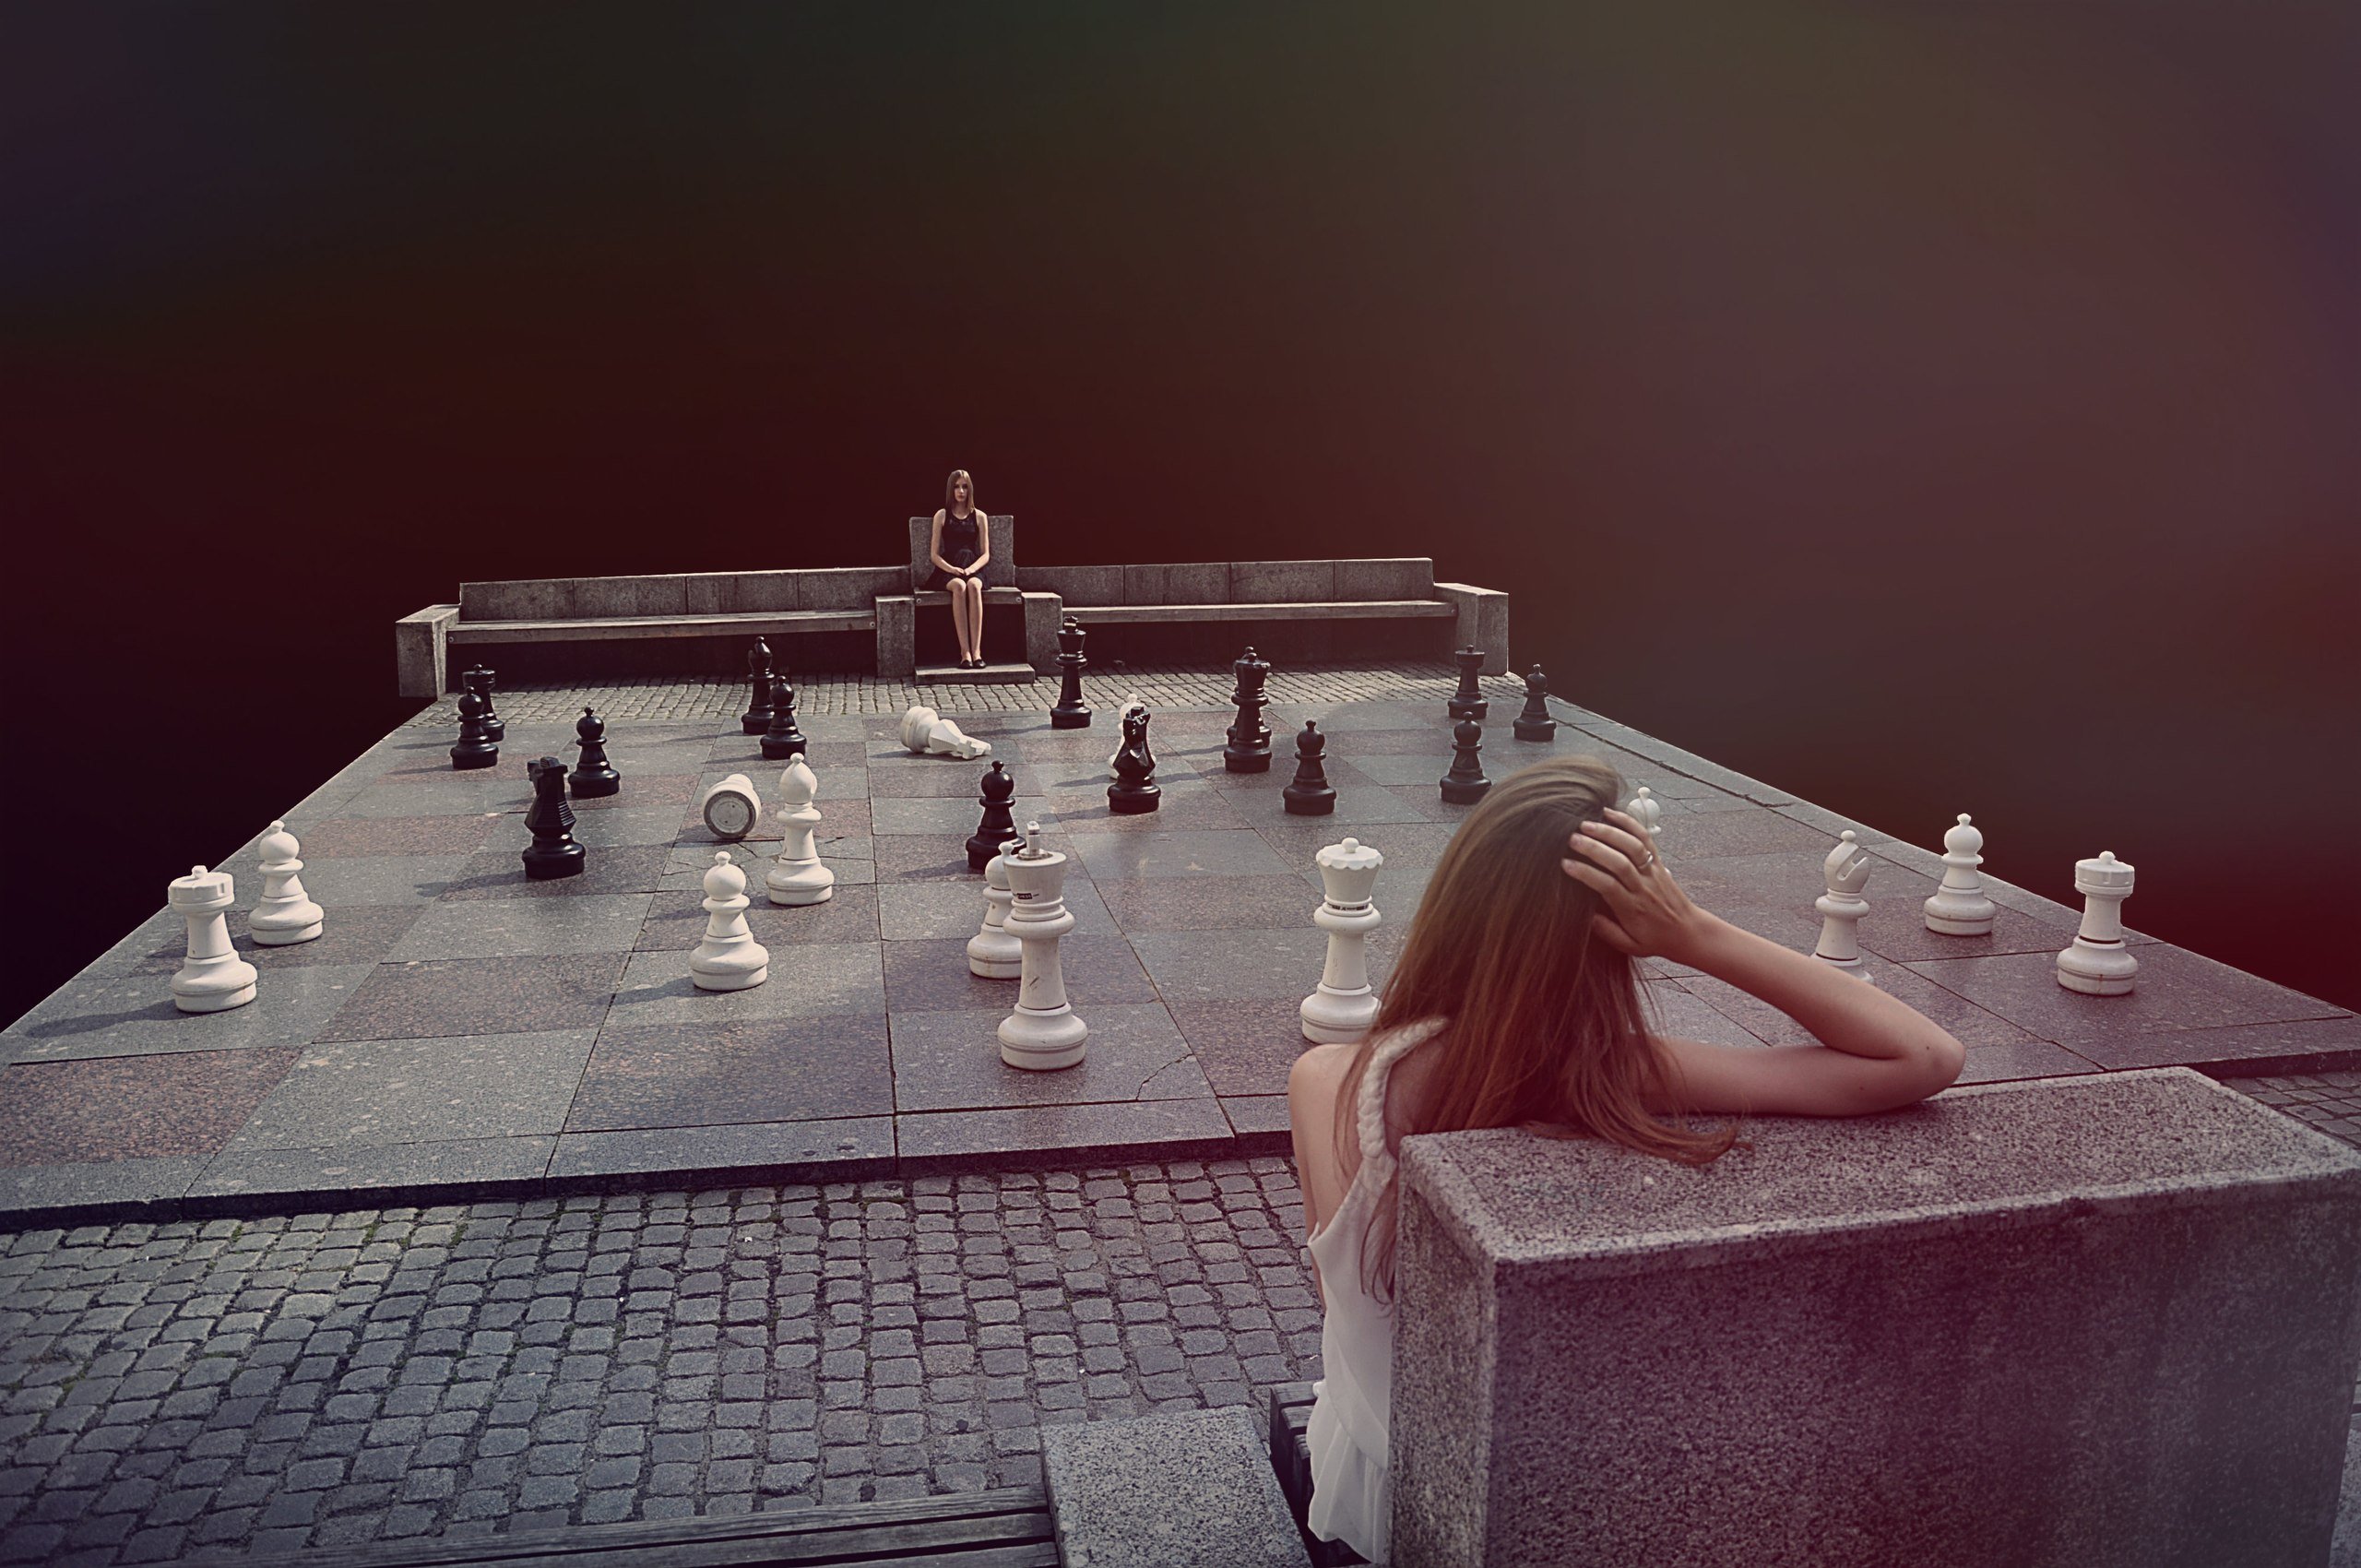 На шахматной доске осталось 5 белых фигур. Женщина на шахматной доске. Фотосессия на шахматной доске. Девушка и шахматы. Женщина на шахматном дасске.